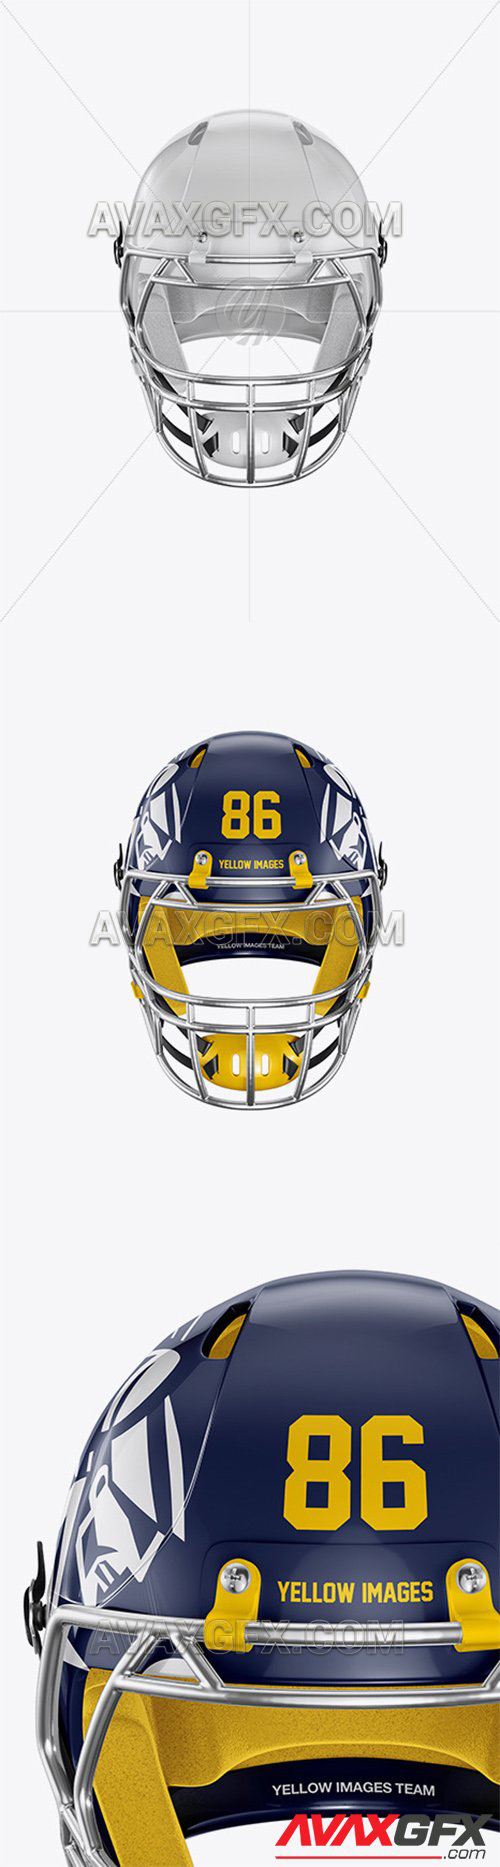 Download American Football Helmet Mockup 56803 » AVAXGFX - All ...